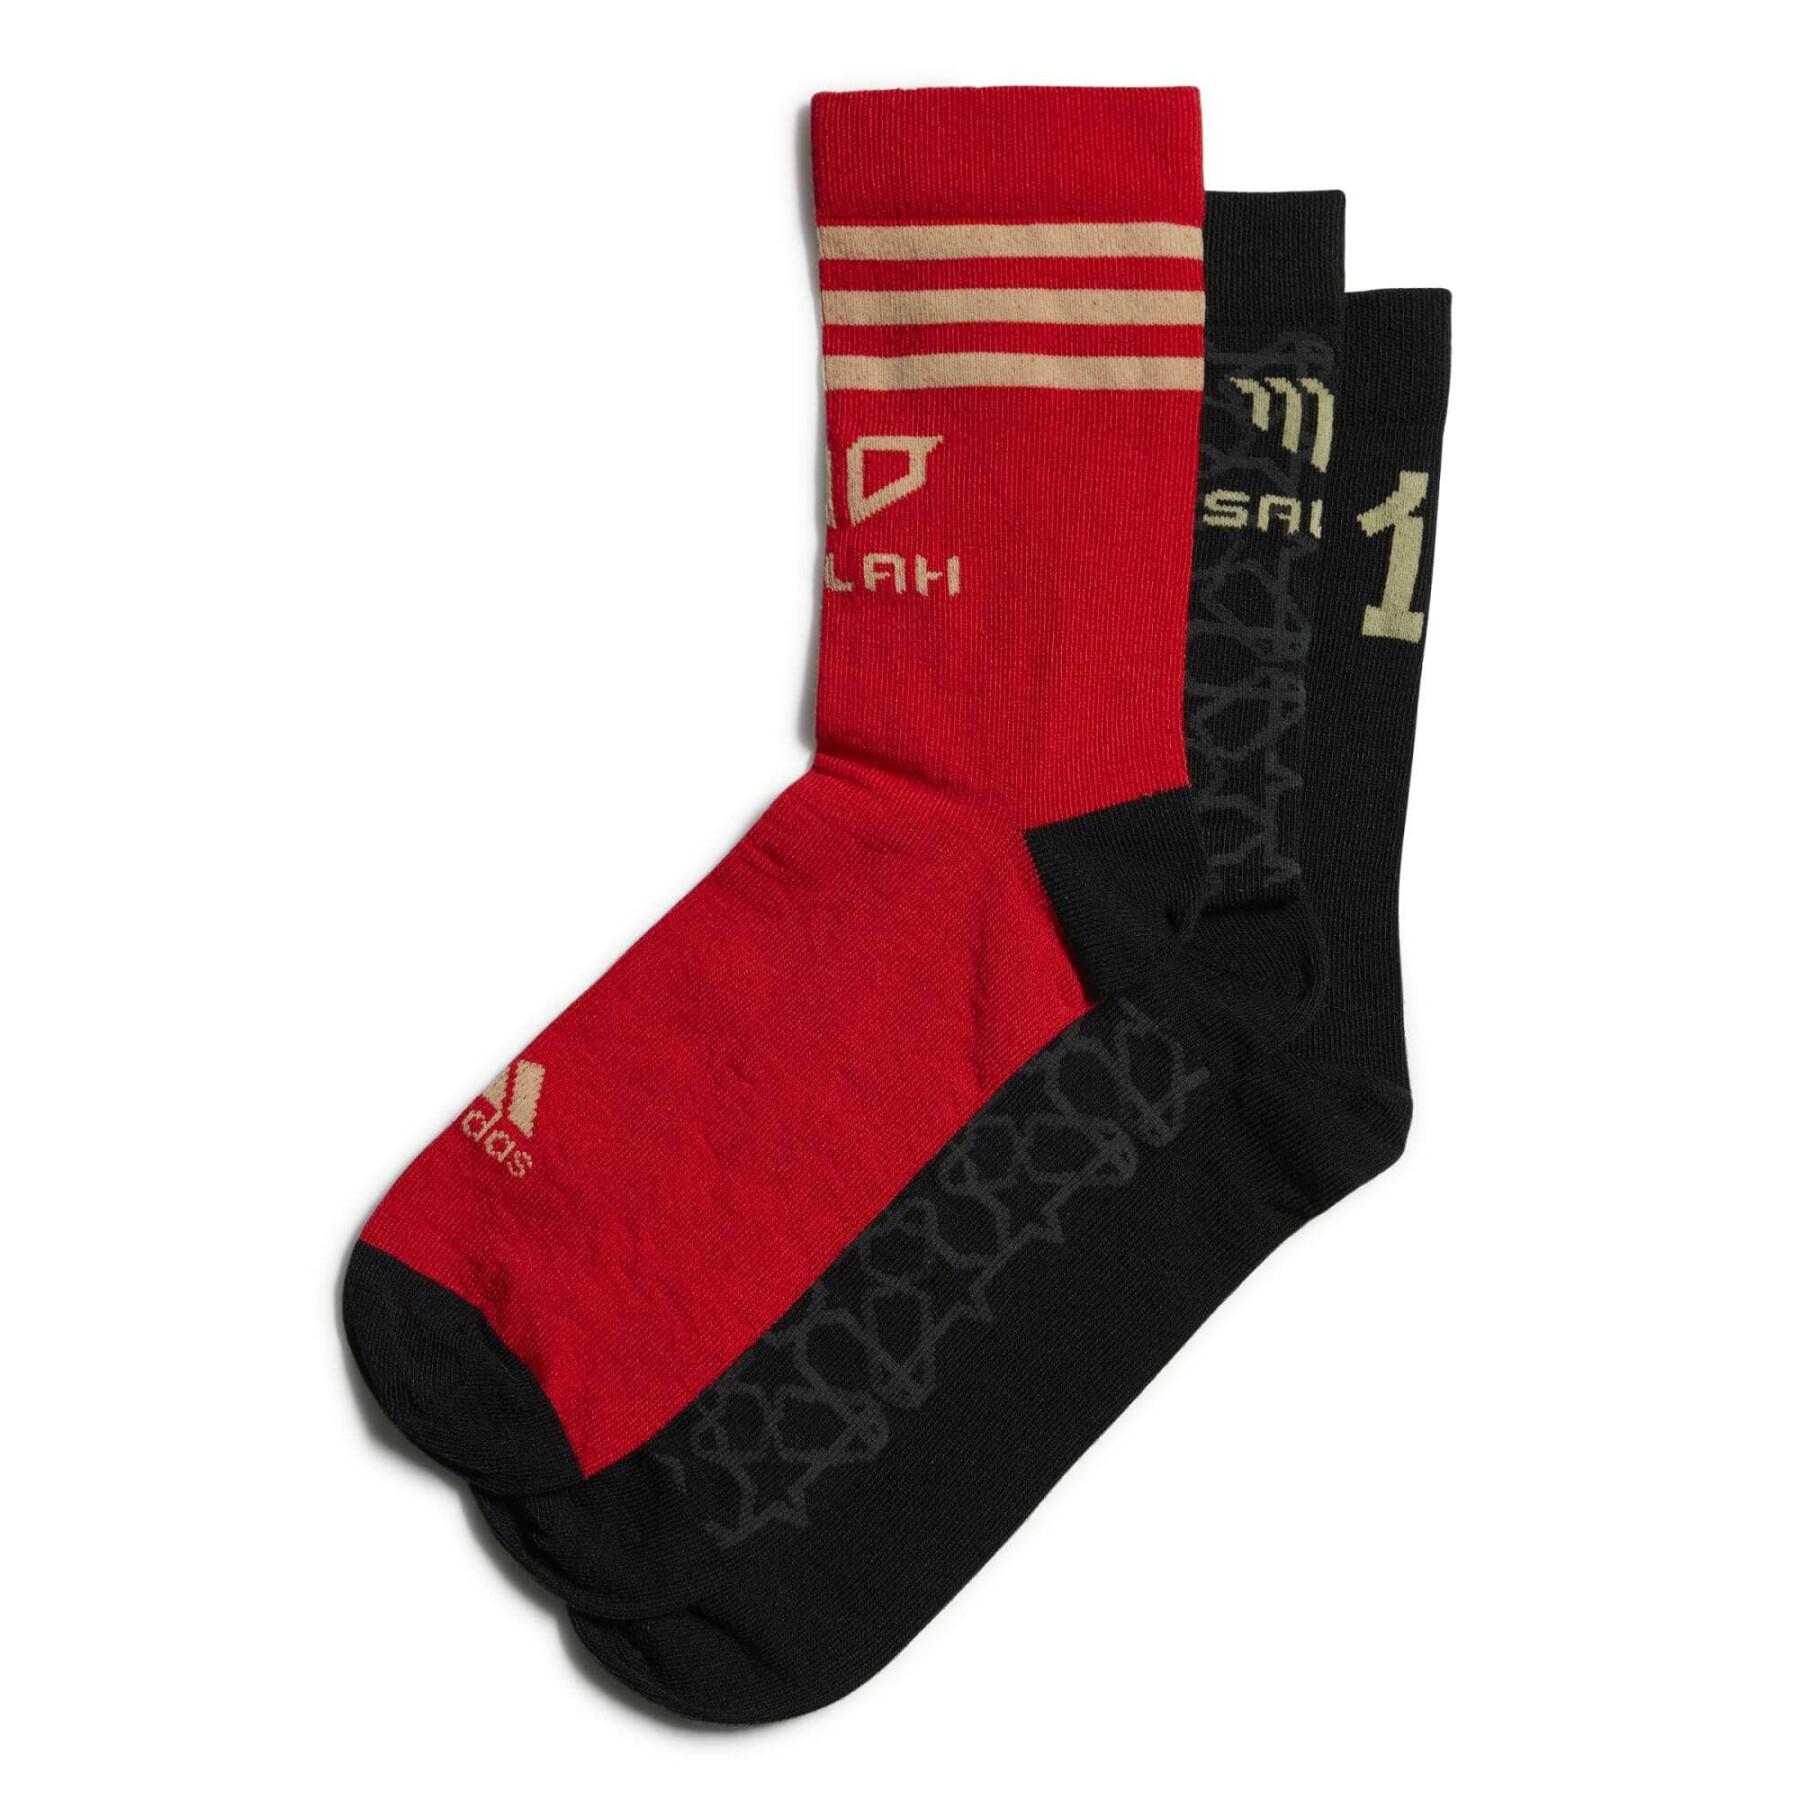 Children's socks adidas Mohammed Salah (x3)